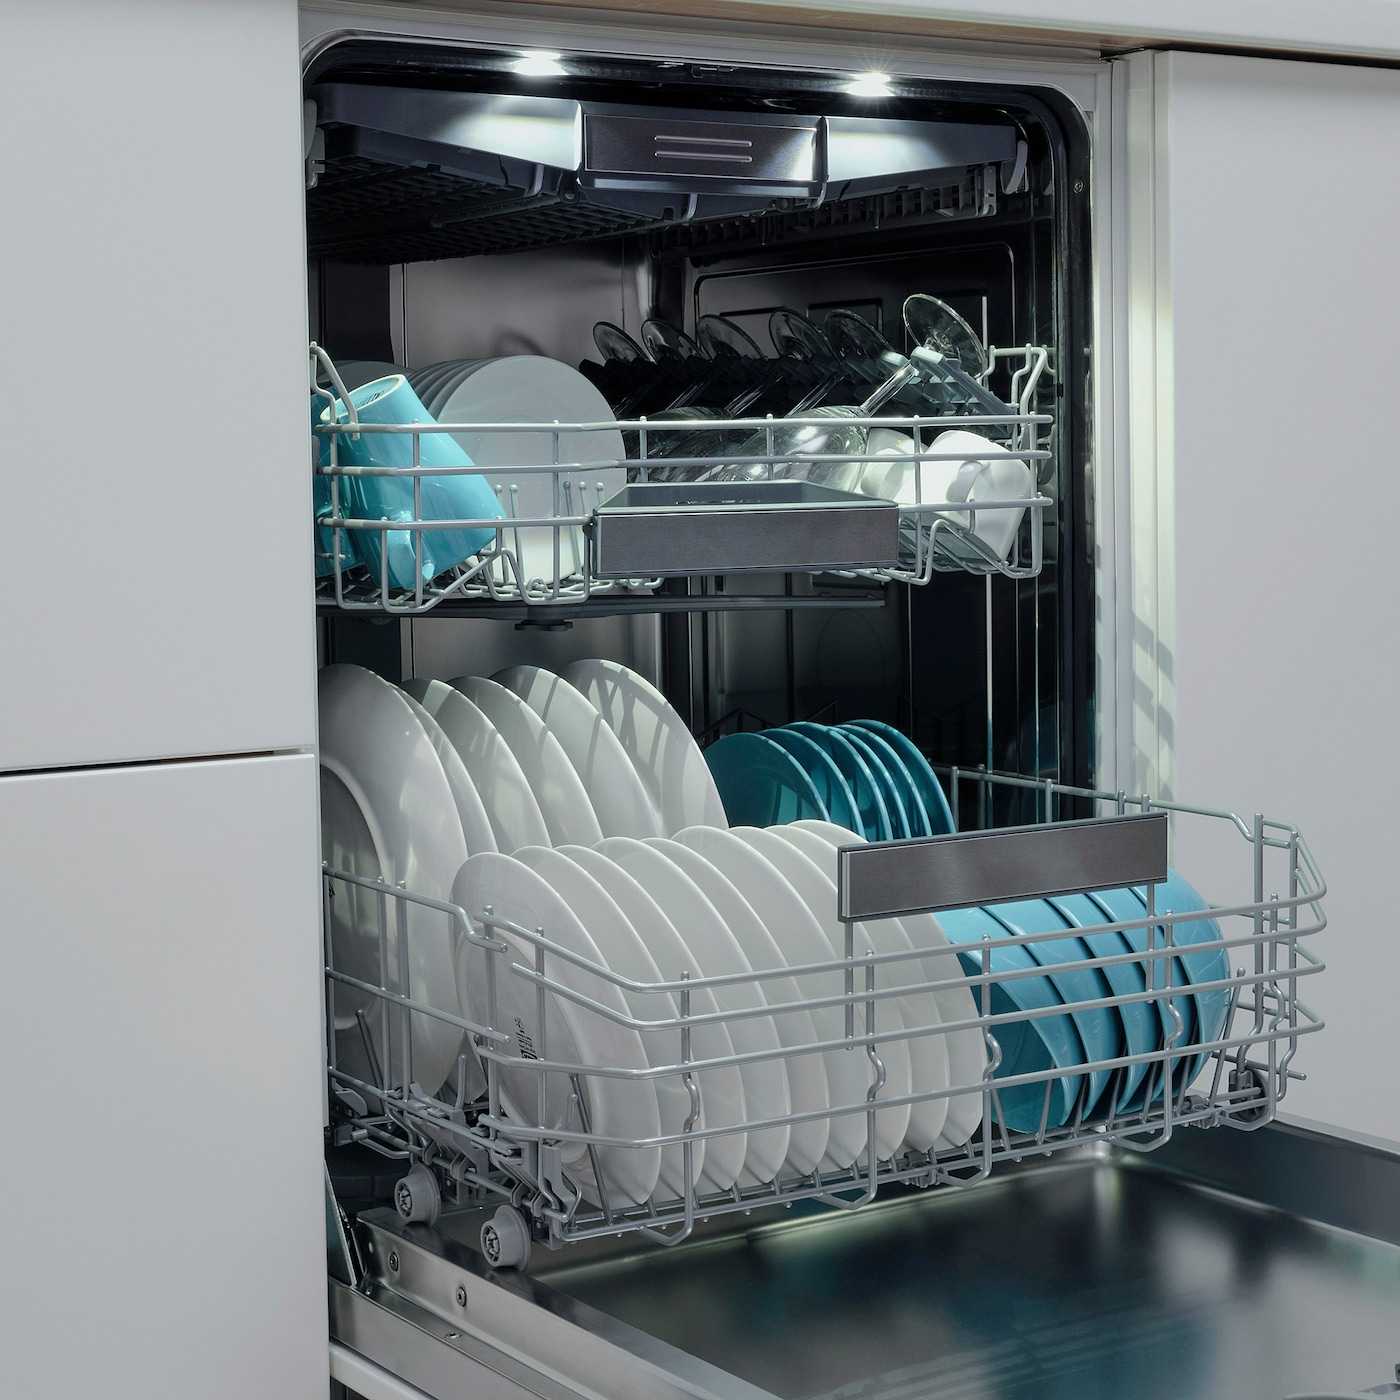 Посудомоечная машина икеа встраиваемая — отзывы